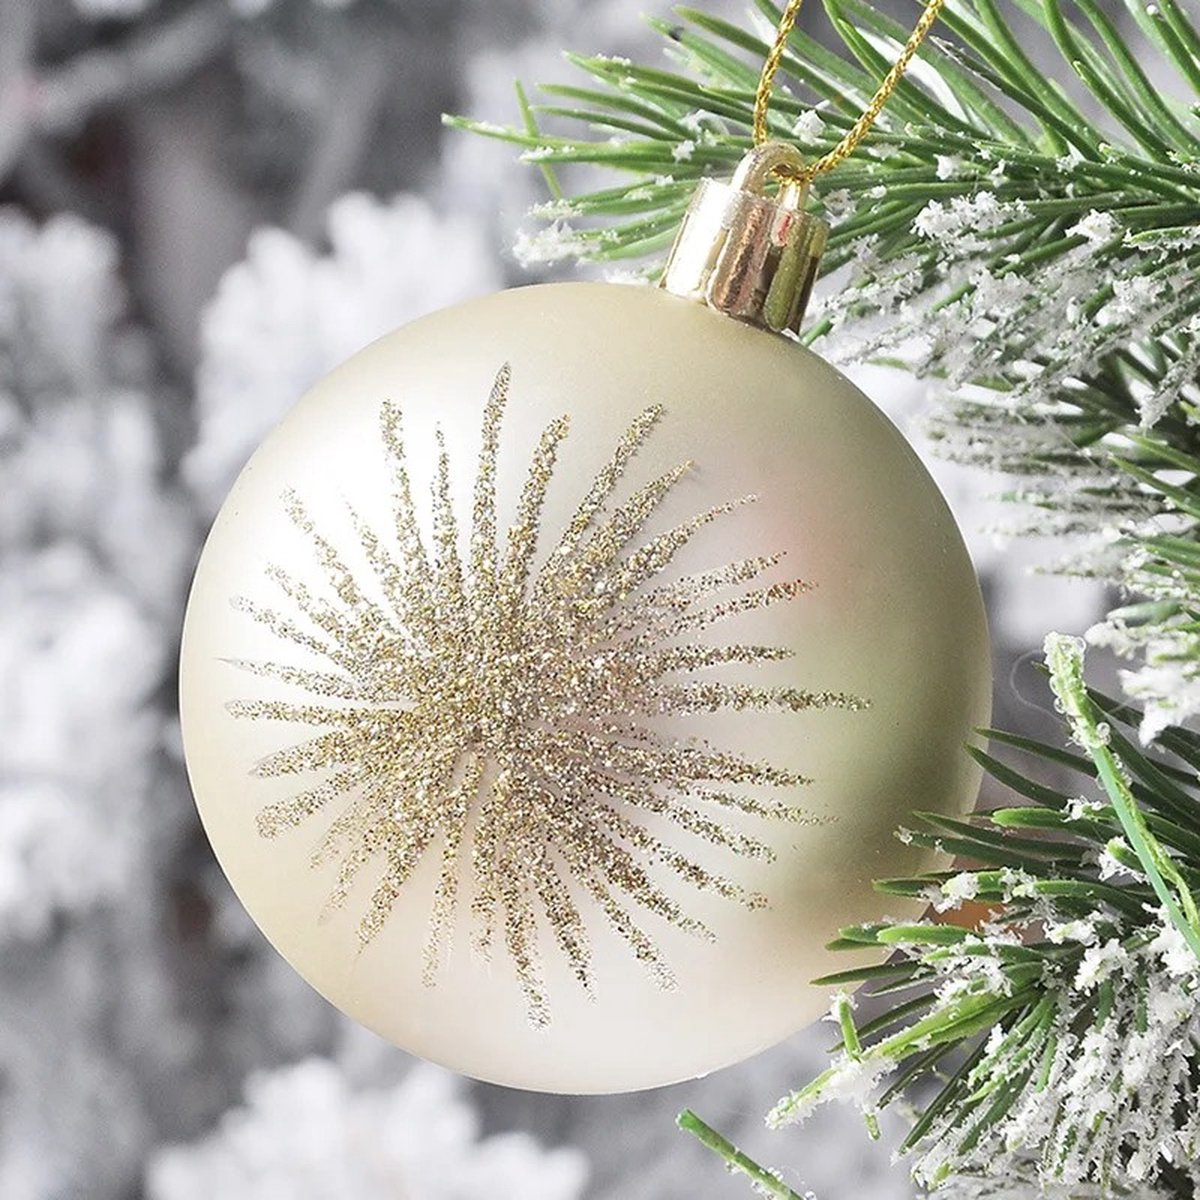 H.K.H Store Kerstballenset 70 stuks - Kerstornamenten - Kerstboomversiering - Kerstdecoratie - Breng magie in huis!